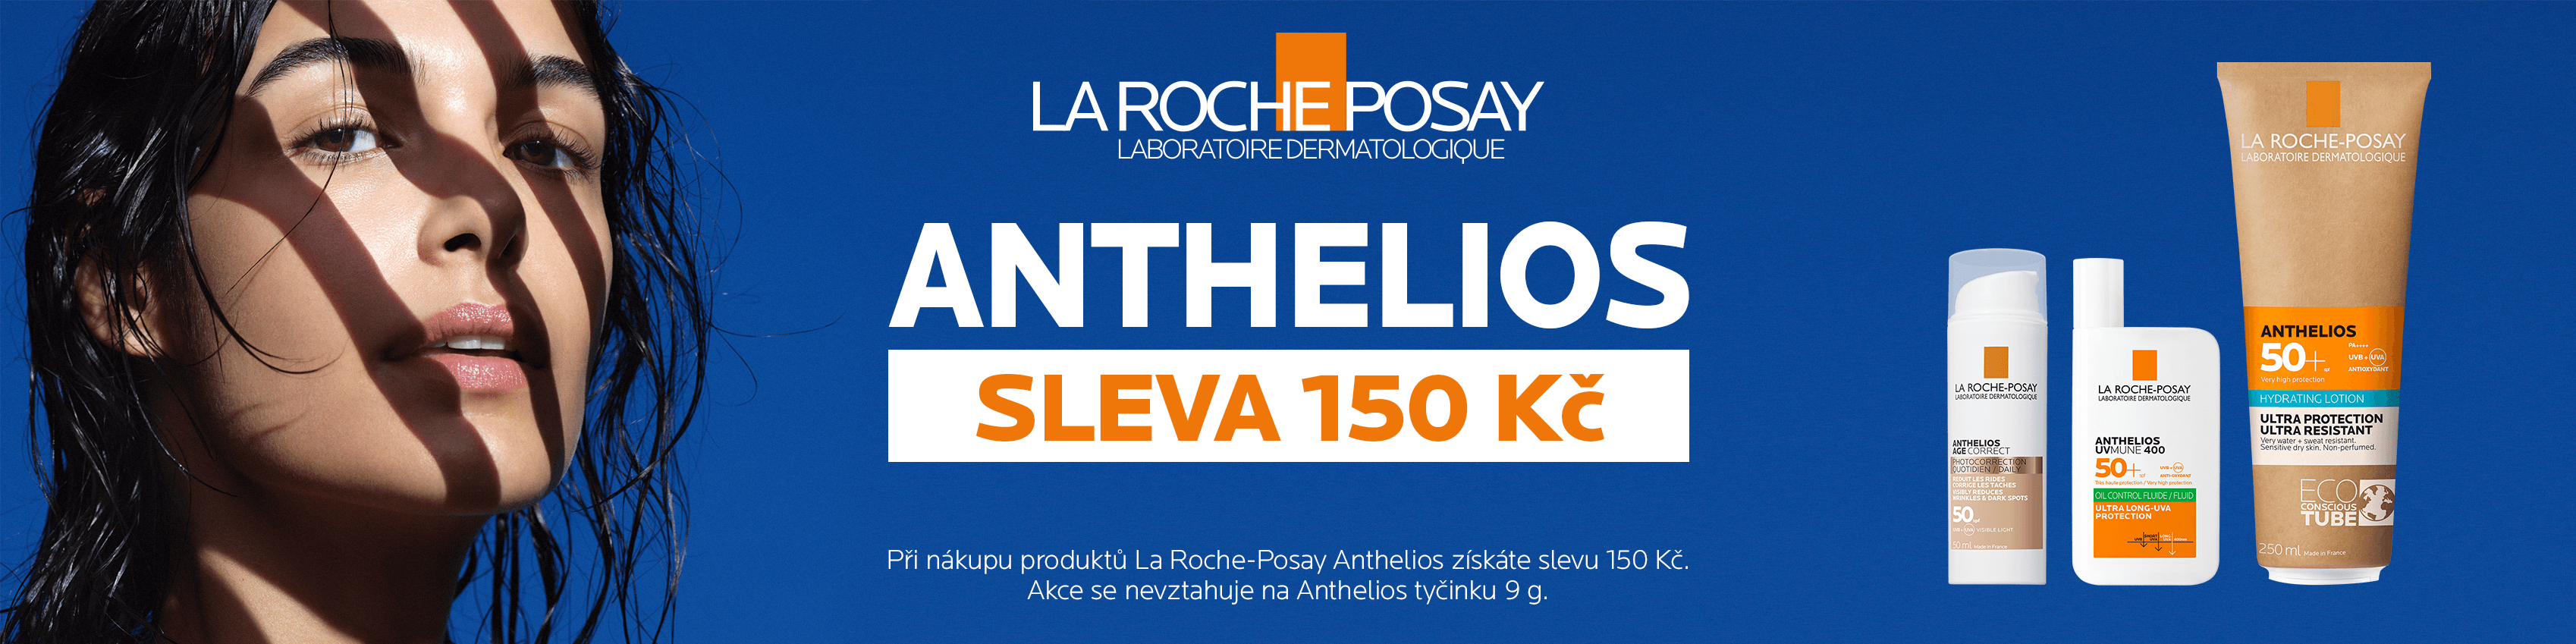 La Roche-Posay Anthelios -150 Kč